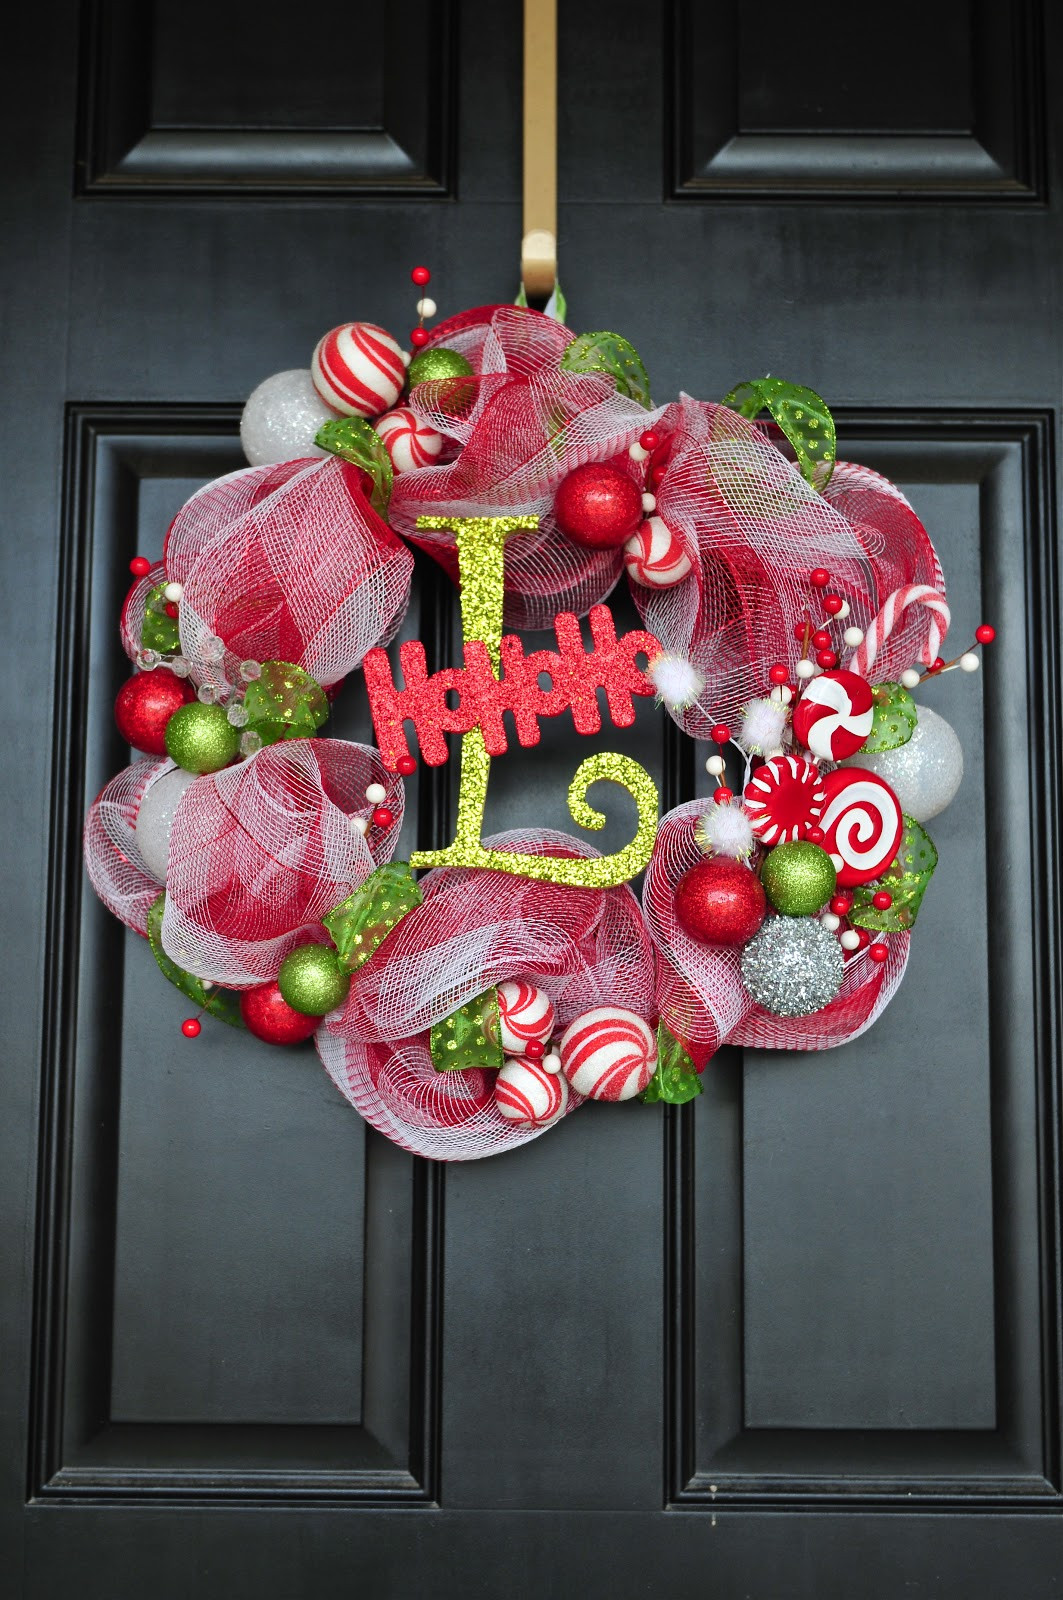 DIY Christmas Wreath Ideas
 DIY Til We Die Easy Christmas mesh wreaths